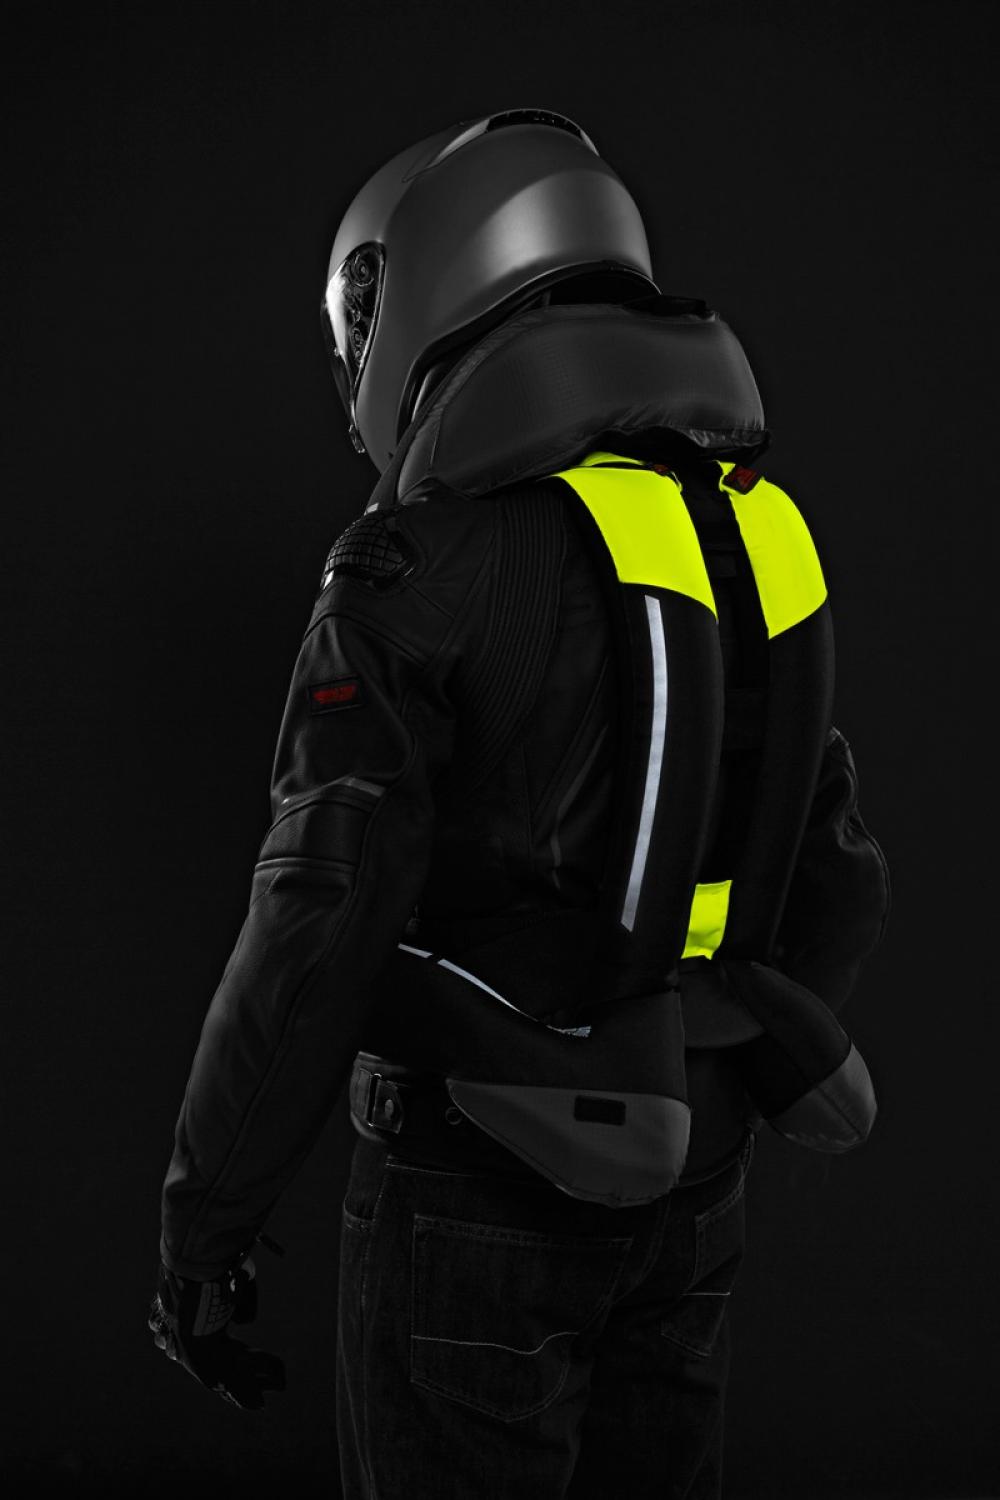 Spidi - Air Bag Full Dps Vest